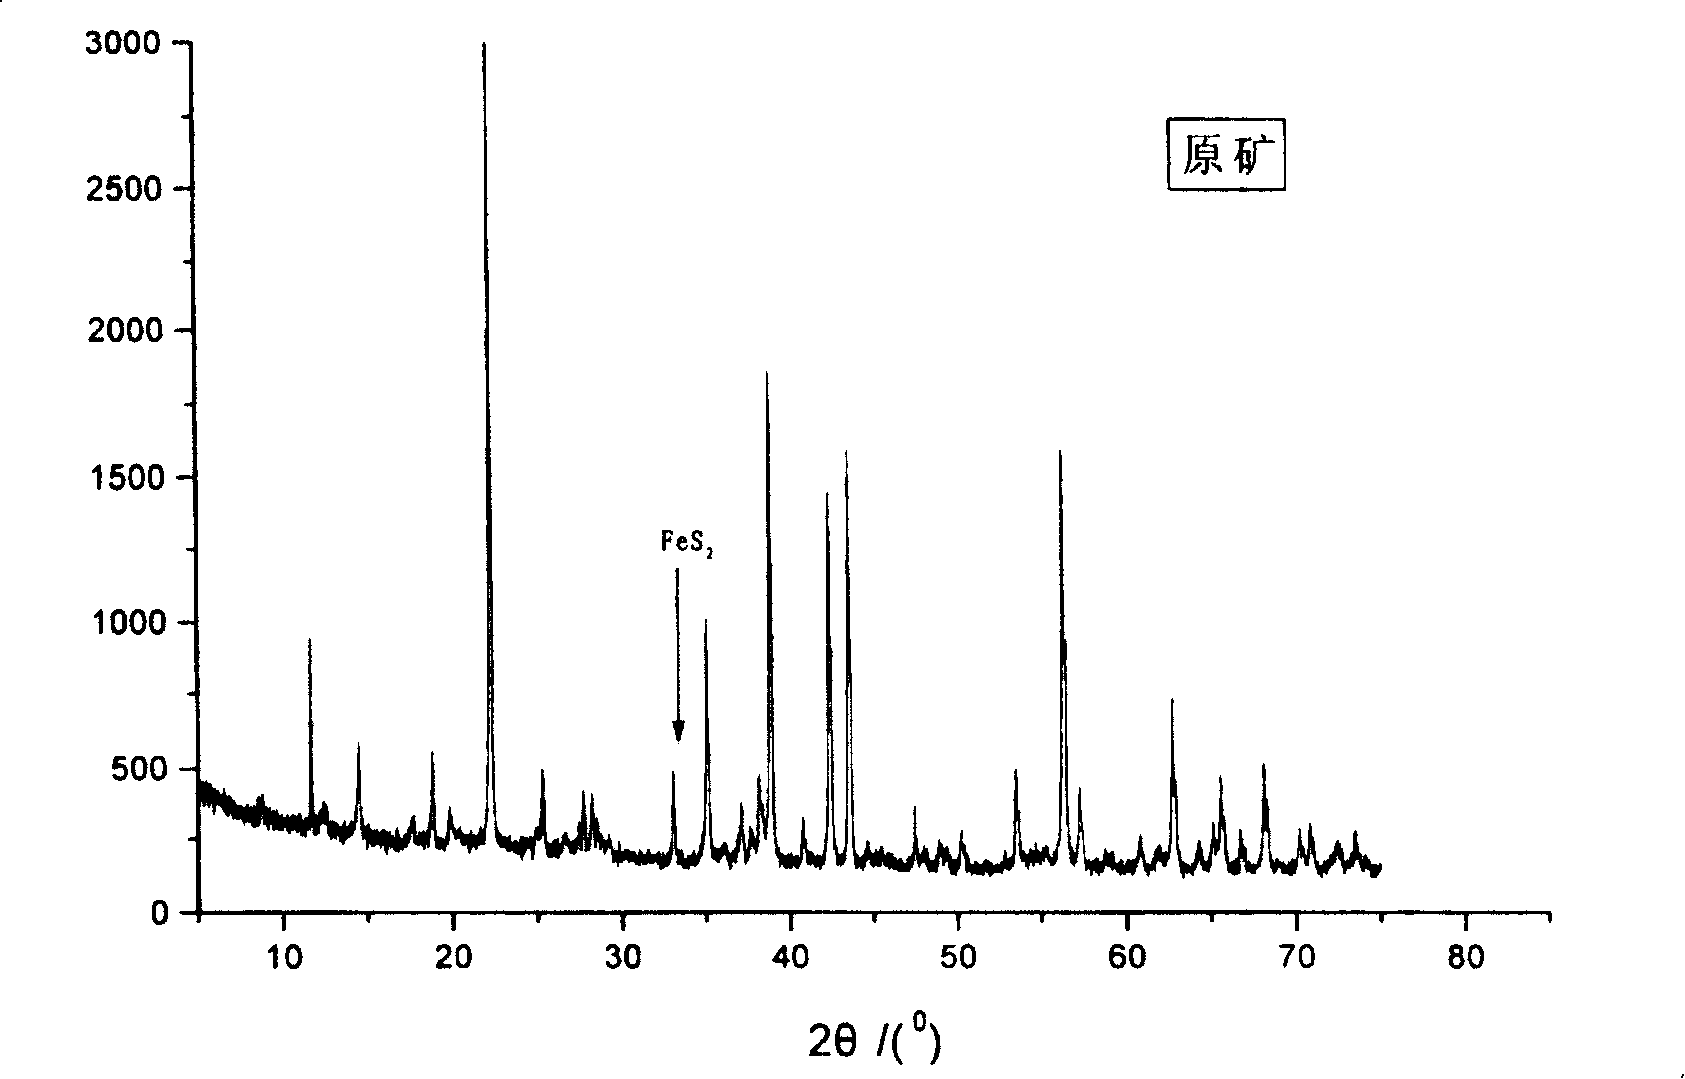 Method of bacterial eliminating sulfur in high sulfur bauxite